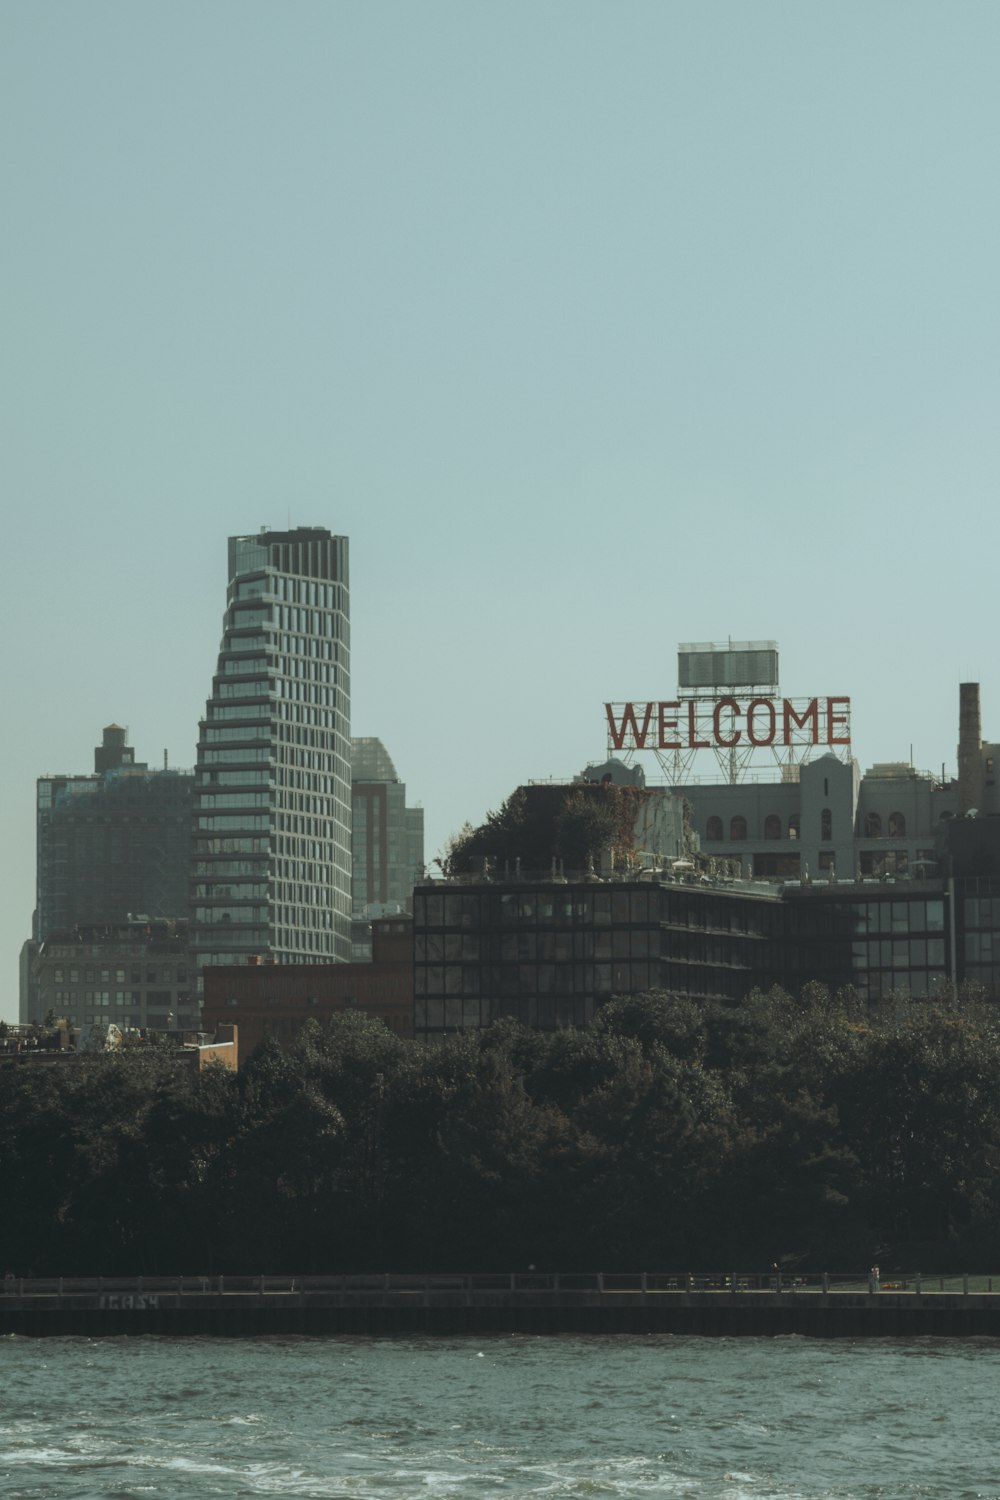 건물 꼭대기에 있는 커다란 환영 표지판